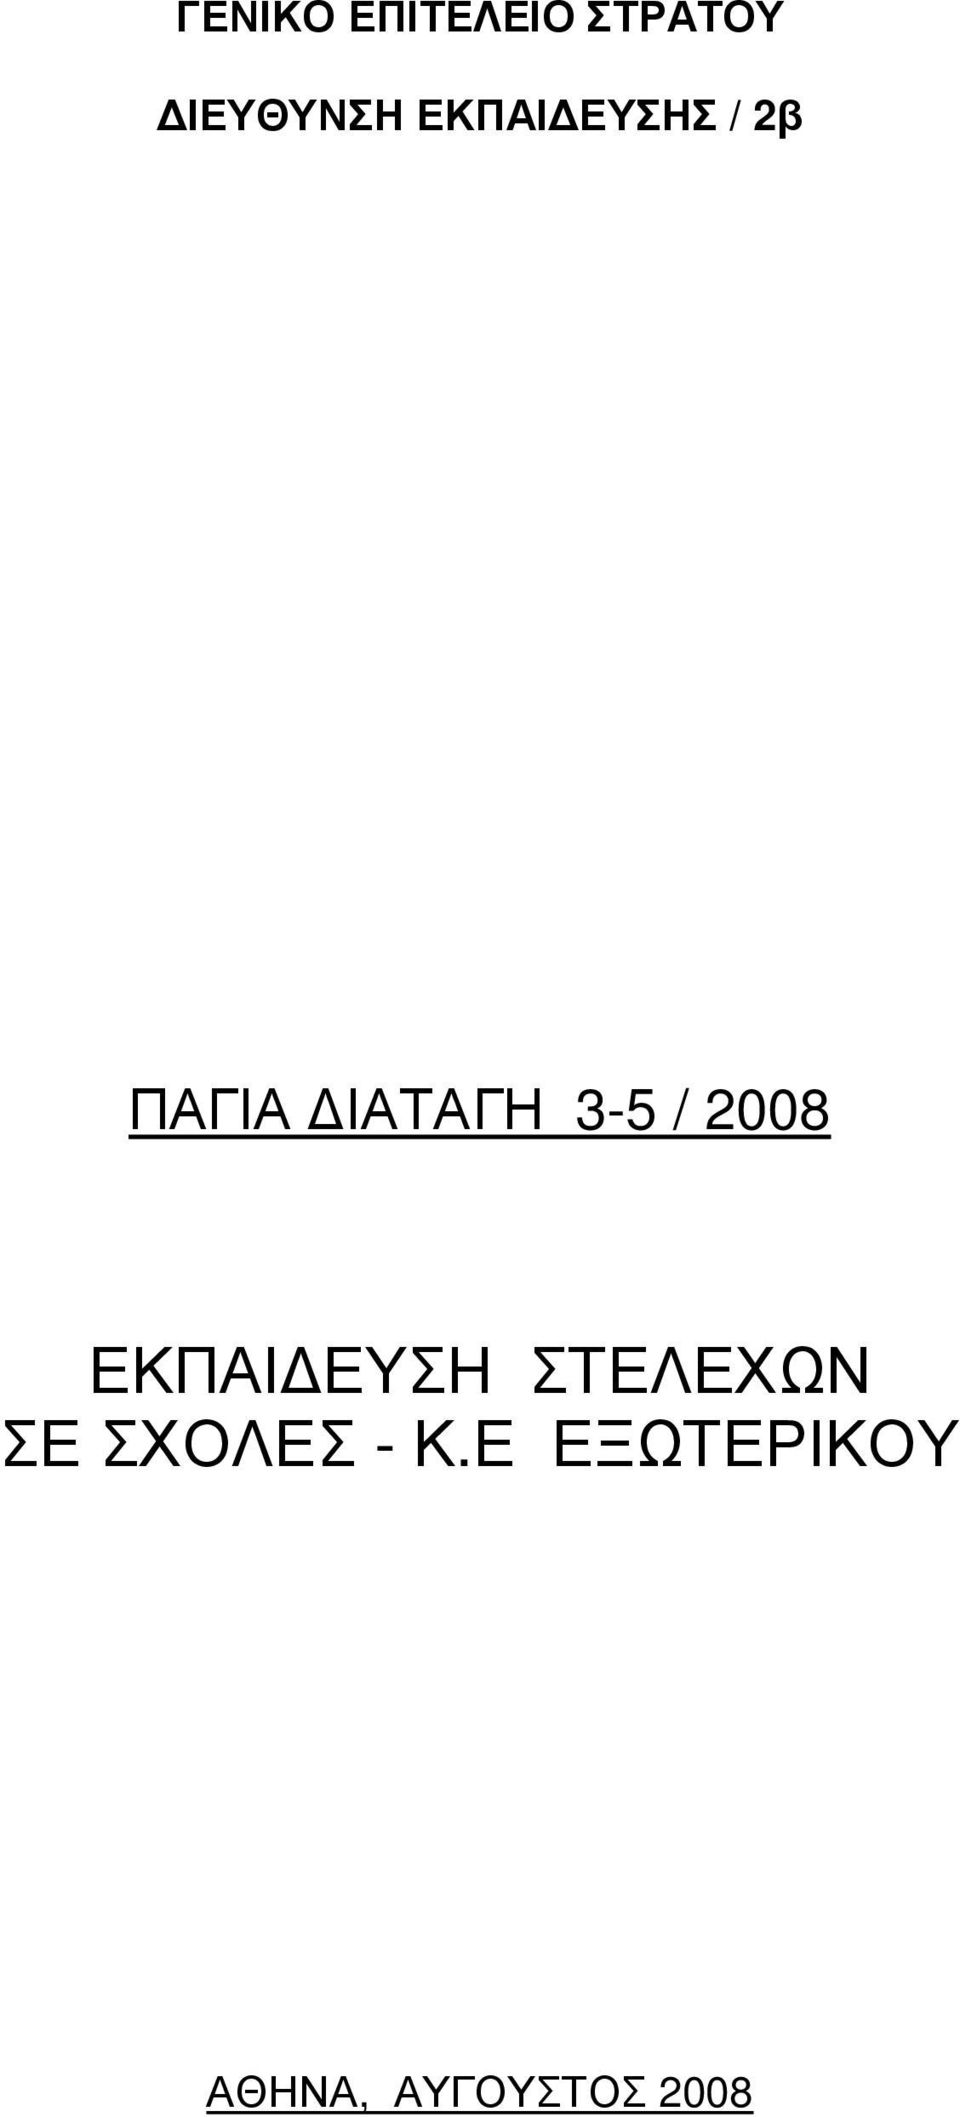 2008 ΕΚΠΑΙ ΕΥΣΗ ΣΤΕΛΕΧΩΝ ΣΕ ΣΧΟΛΕΣ